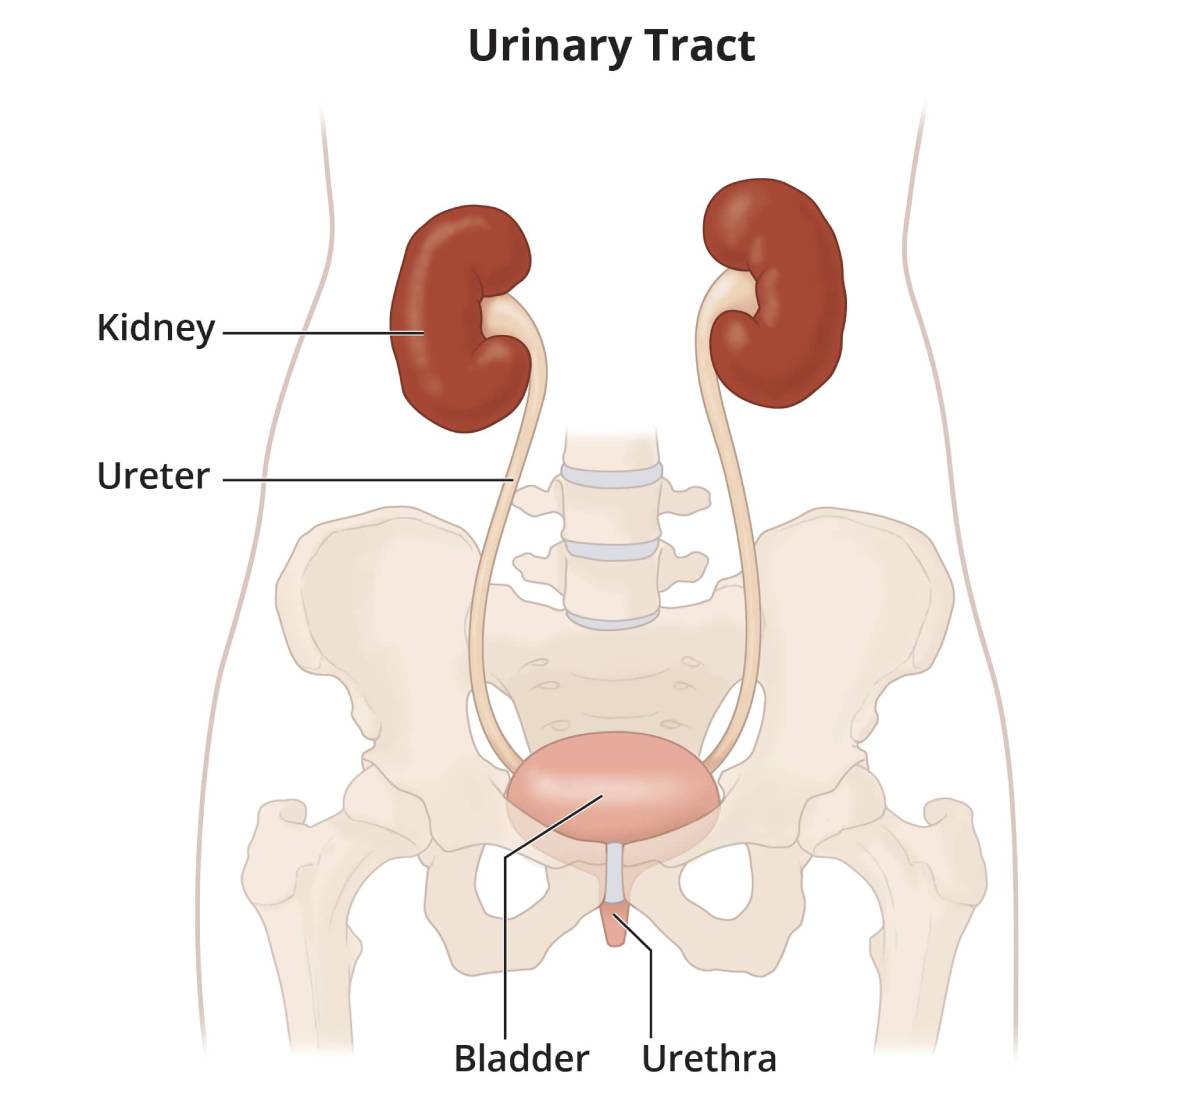 Urinary Incontinence - Symptom Evaluation